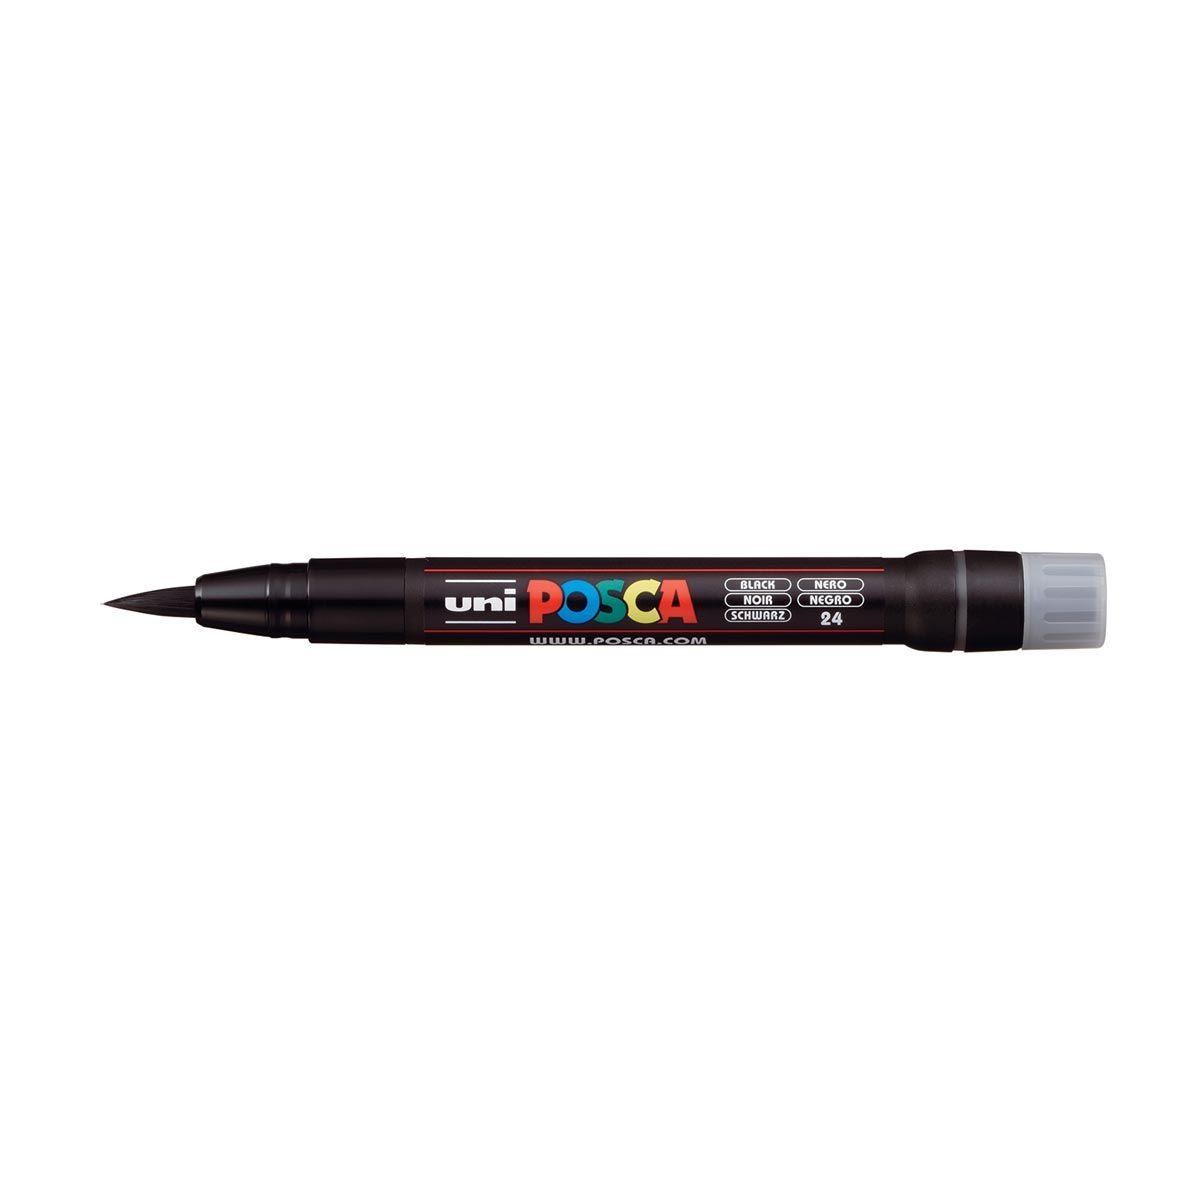 UNI POSCA PCF-350 Brush Tipped Marker Pen – Black